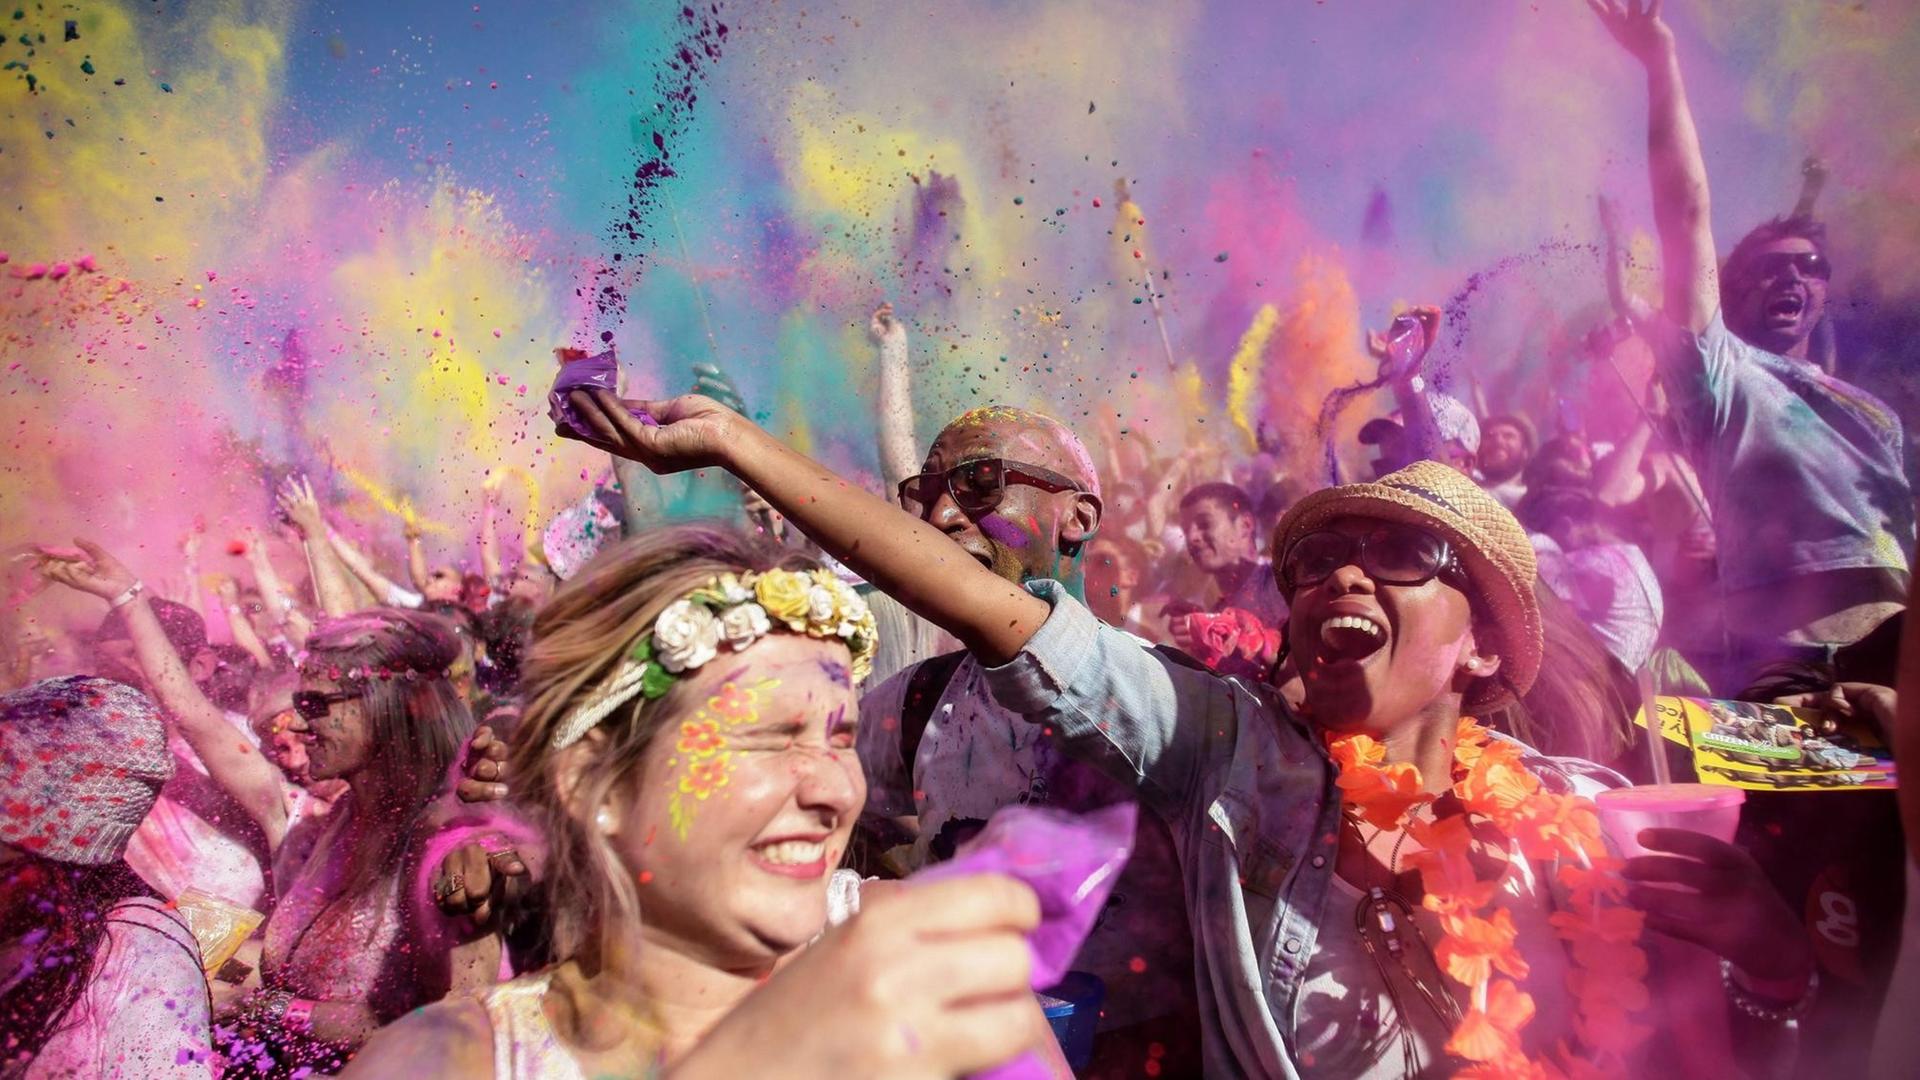 Welche Bedeutung haben die Farben beim Holi Fest?